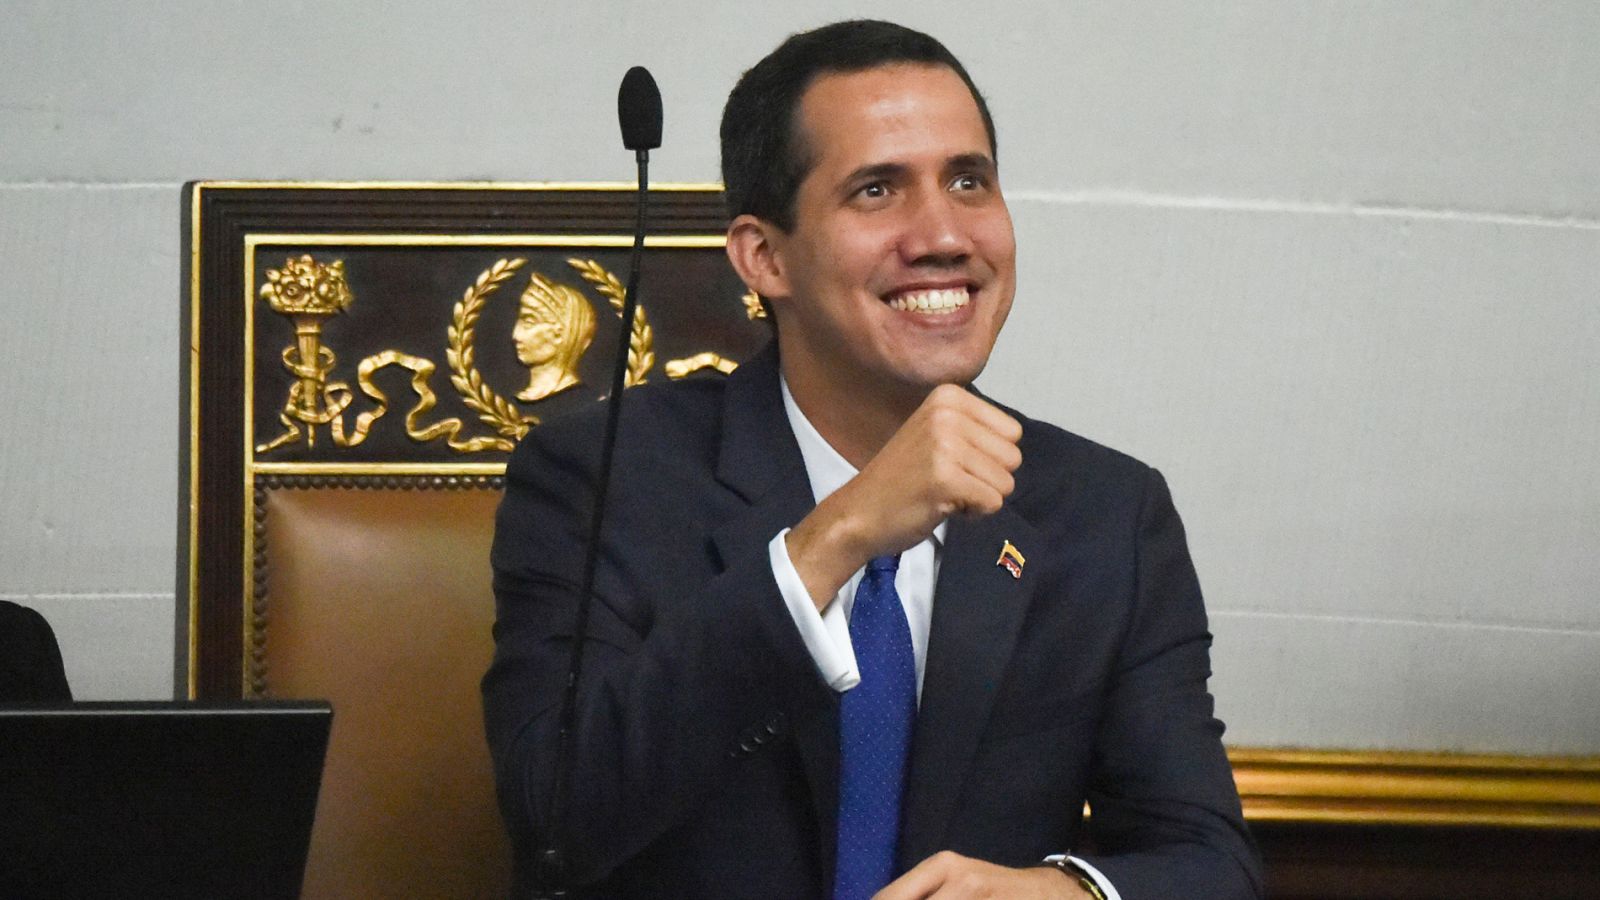 Venezuela Asamblea Nacional: La Asamblea Nacional opositora fija la hoja de ruta para derrocar a Maduro - RTVE.es